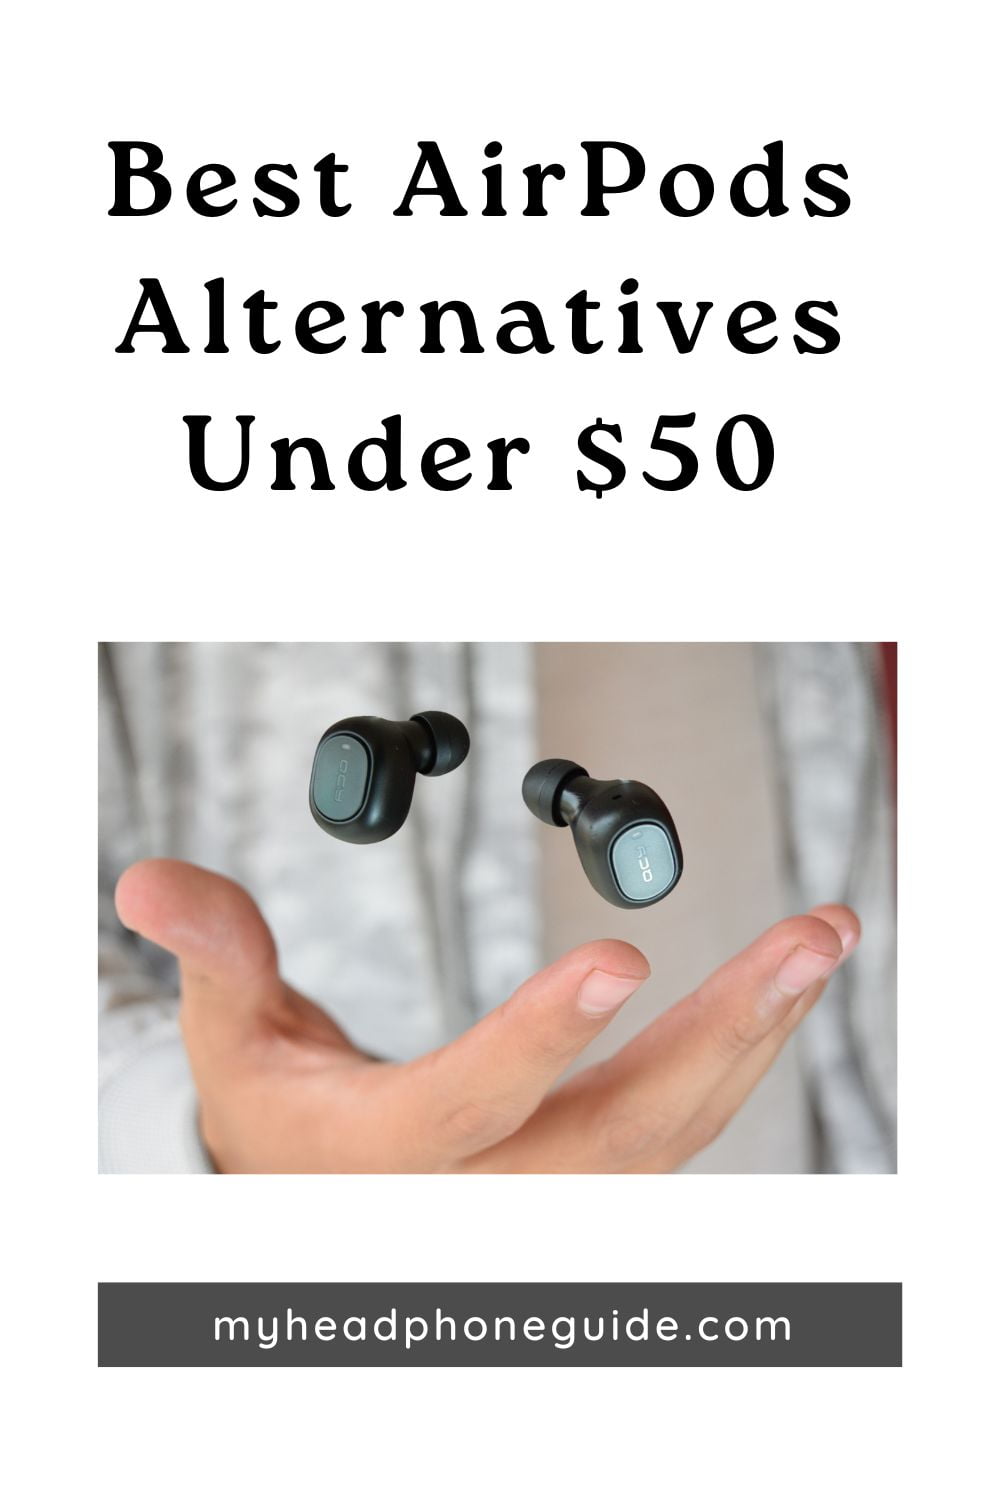 Best AirPods Alternatives Under $50